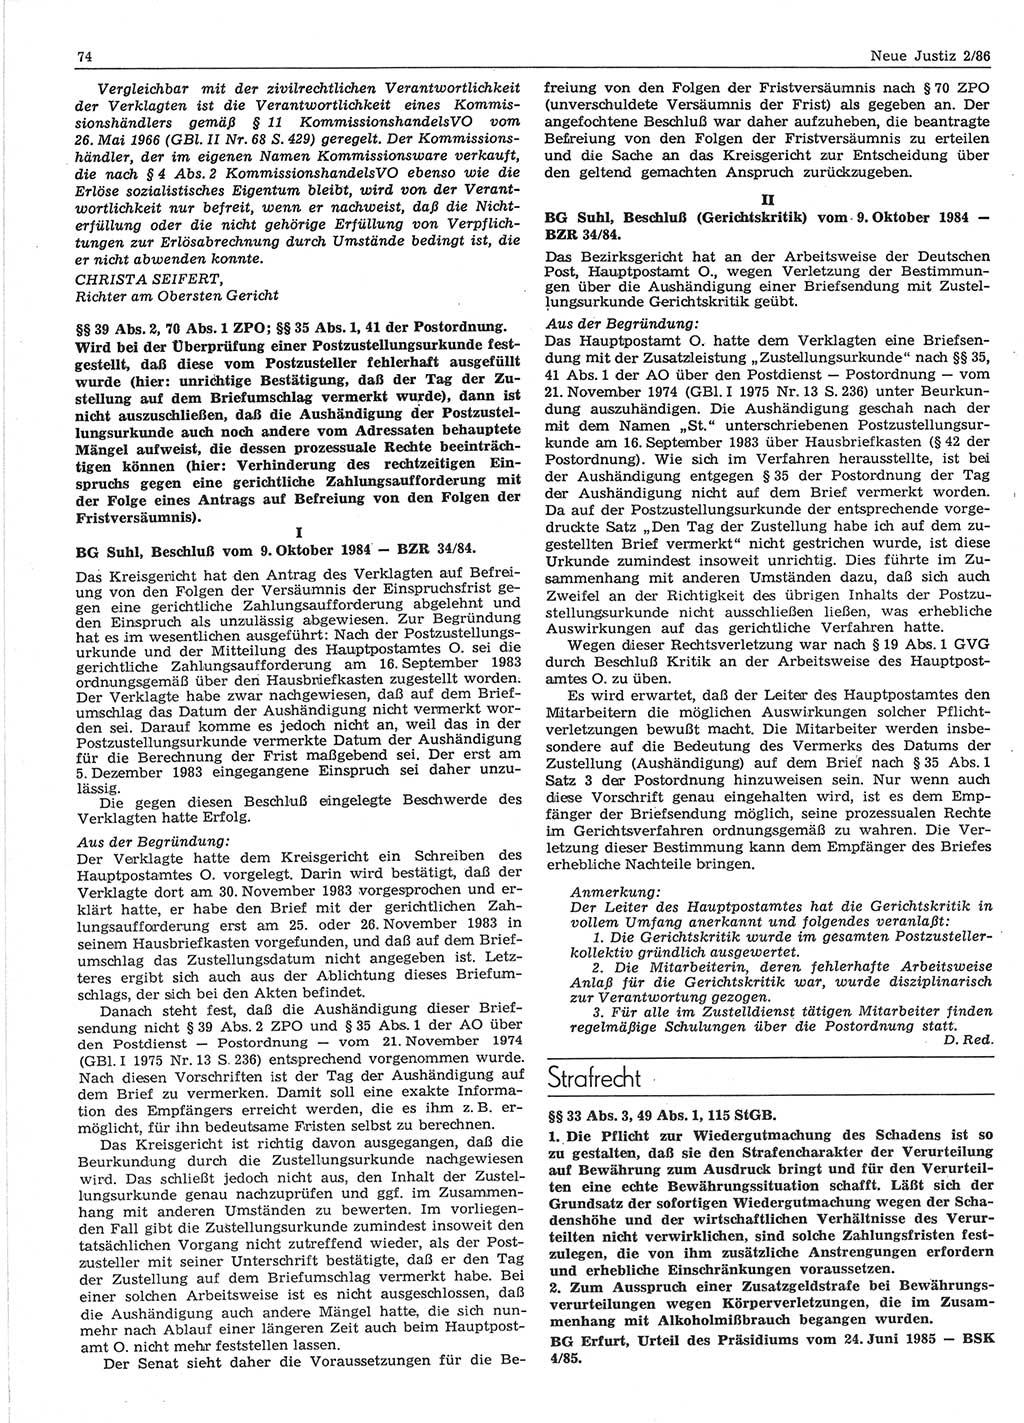 Neue Justiz (NJ), Zeitschrift für sozialistisches Recht und Gesetzlichkeit [Deutsche Demokratische Republik (DDR)], 40. Jahrgang 1986, Seite 74 (NJ DDR 1986, S. 74)